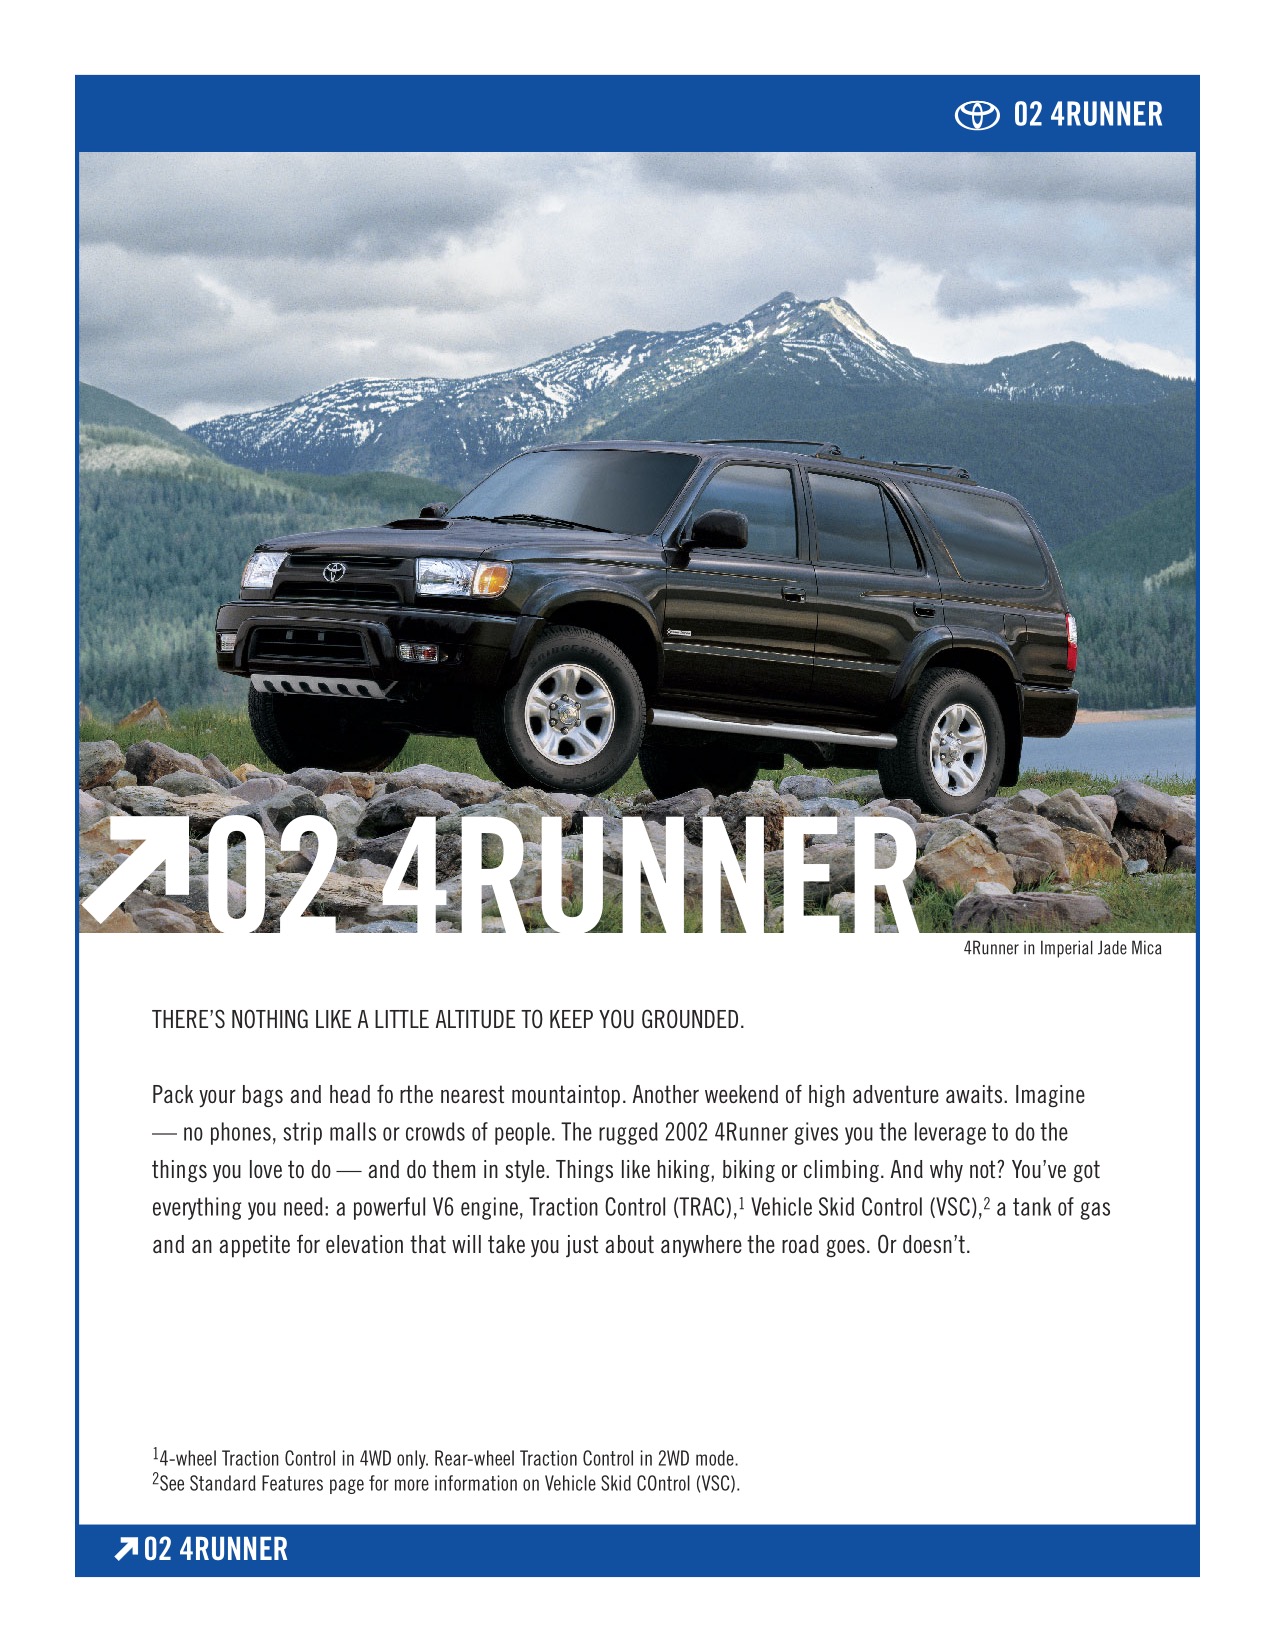 2002 Toyota 4Runner Brochure